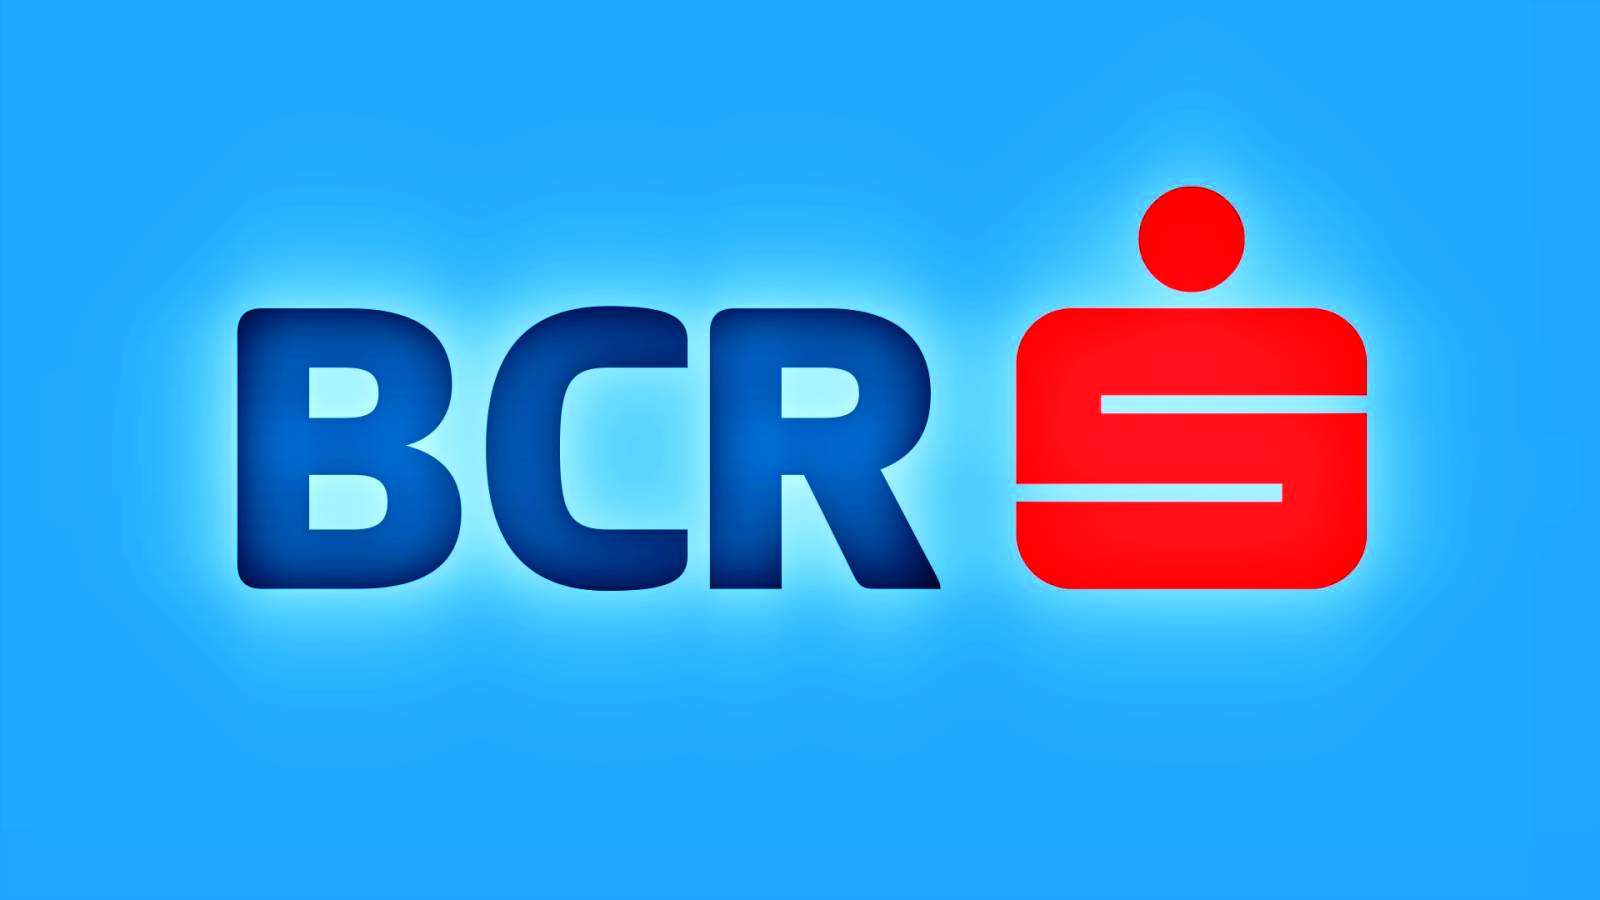 BCR Rumänien warnt DNSC vor neuem Cyberangriff